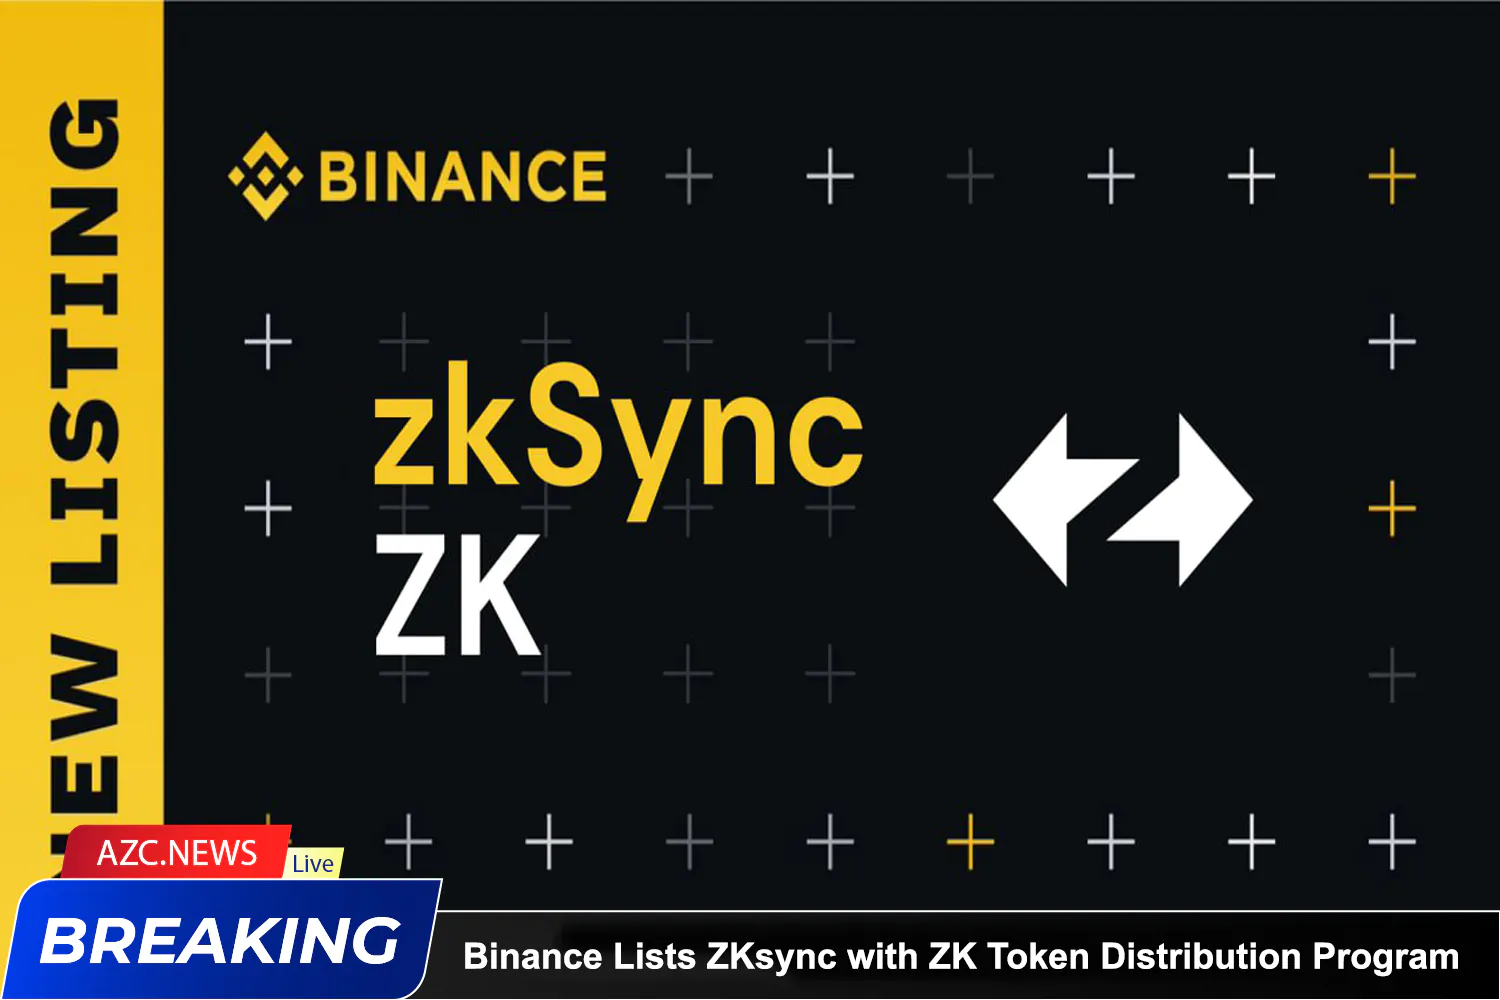 Azcnews Binance Lists Zksync With Zk Token Distribution Program